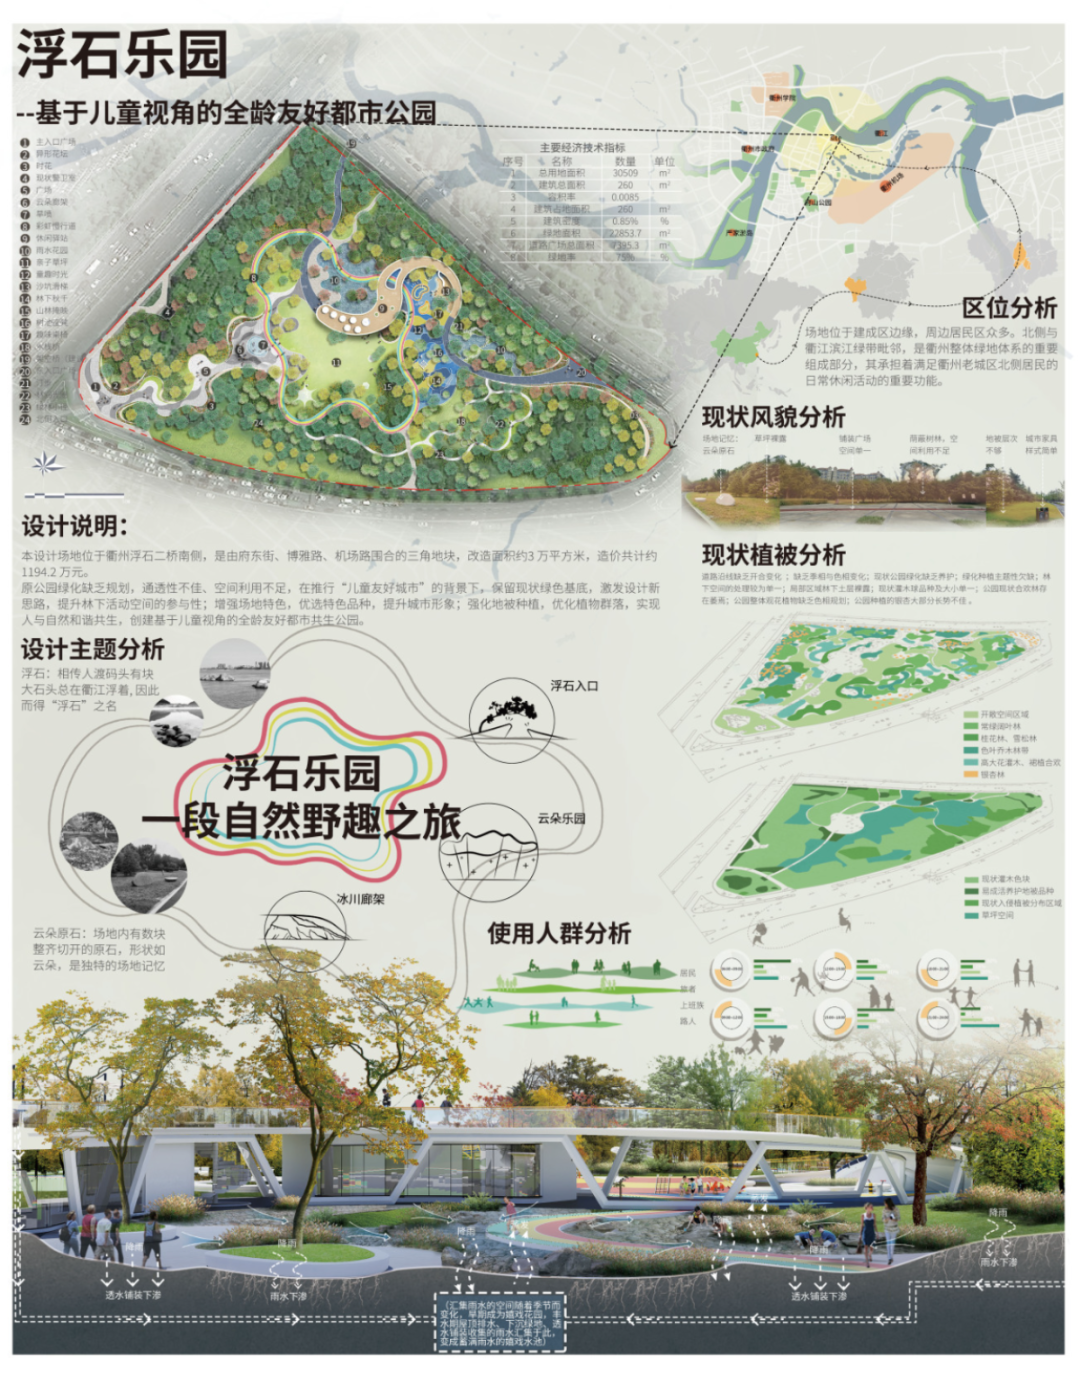 中国联合获浙江省公园绿地改造提升方案设计奖